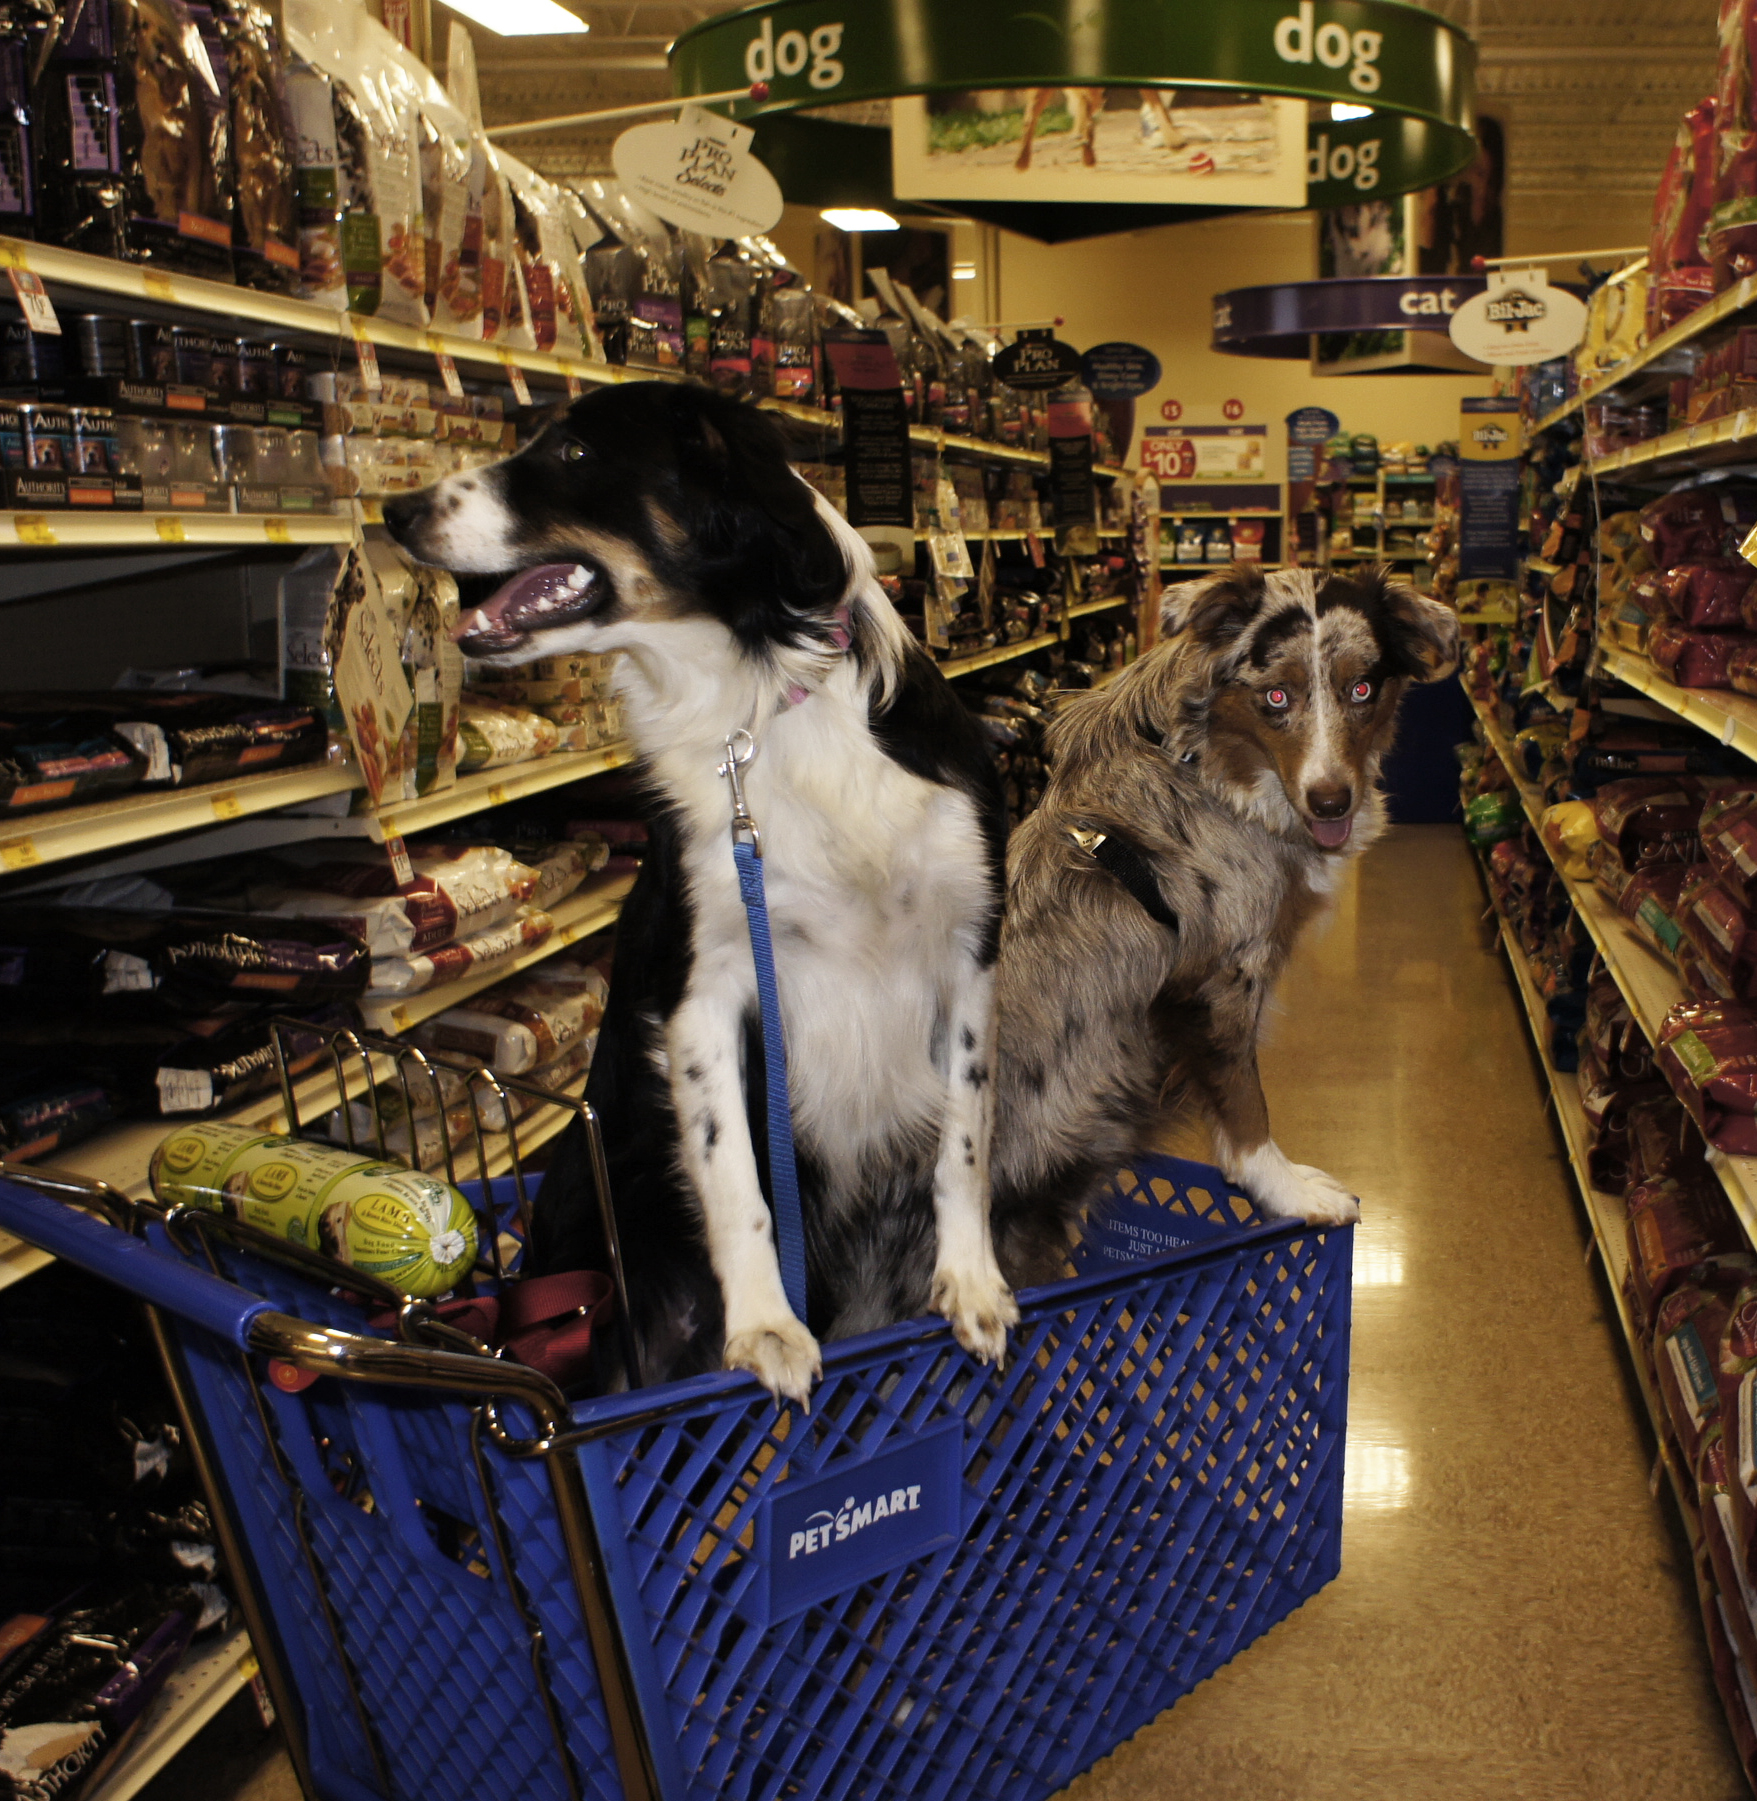 Una fotografía muestra a 2 perros montando en un carrito de compras dentro de una tienda Pet smart.